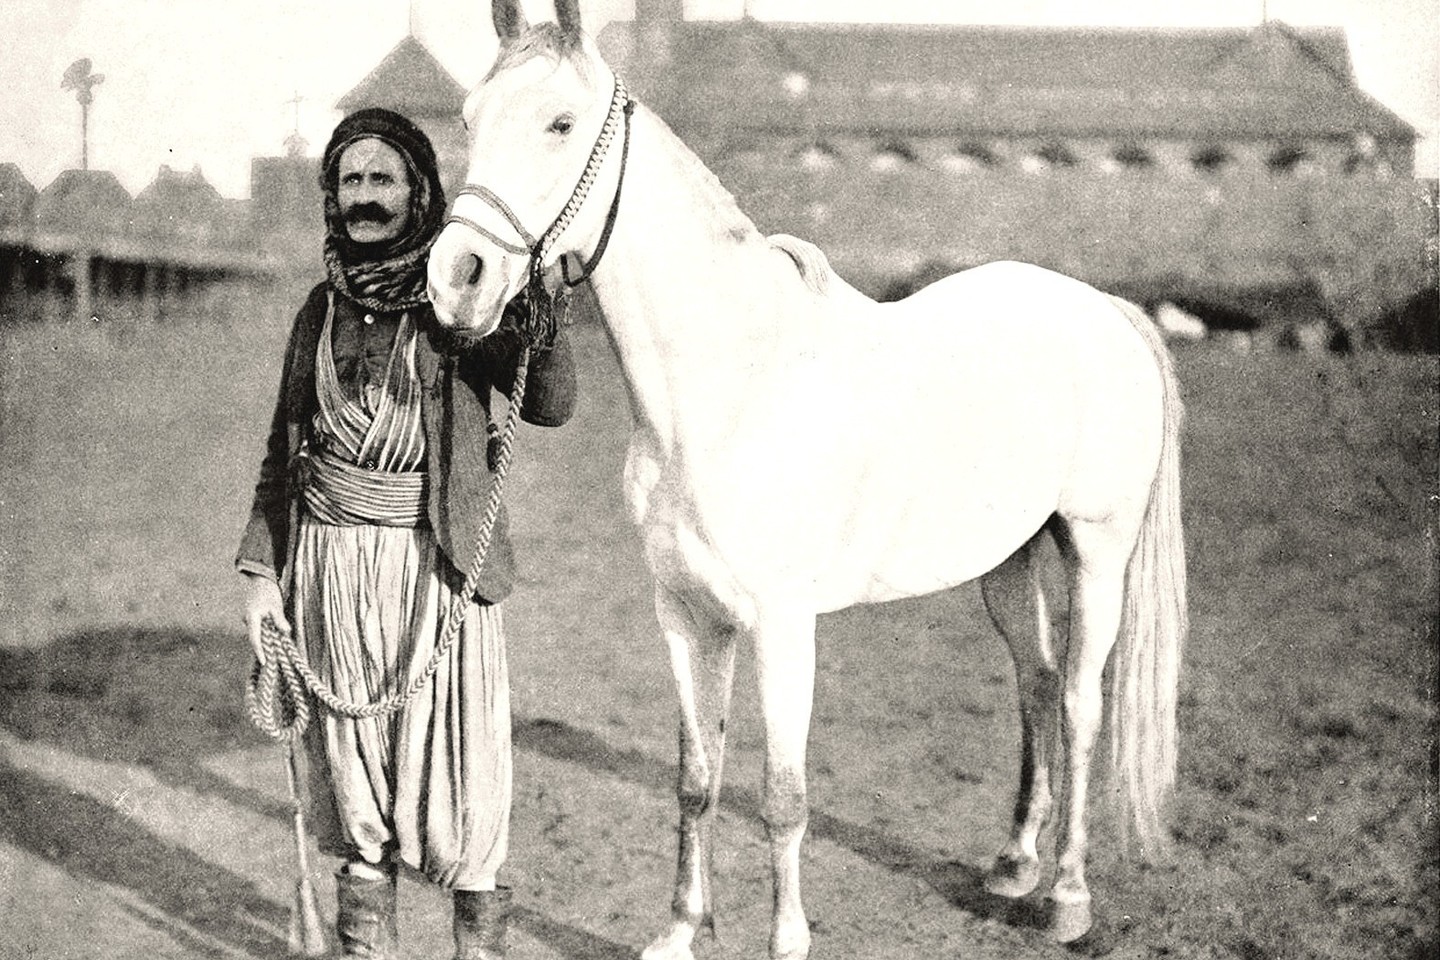 Klajoklių beduinų Arabijos pusiasalyje daugiau nei prieš tūkstantį metų išveistai arabų arklių veislei iškilo didelė grėsmė. Dabar šie proporcingų kūno formų žirgai naudojami lenktynėms ir pramogoms.<br>Wikipedia nuotr.